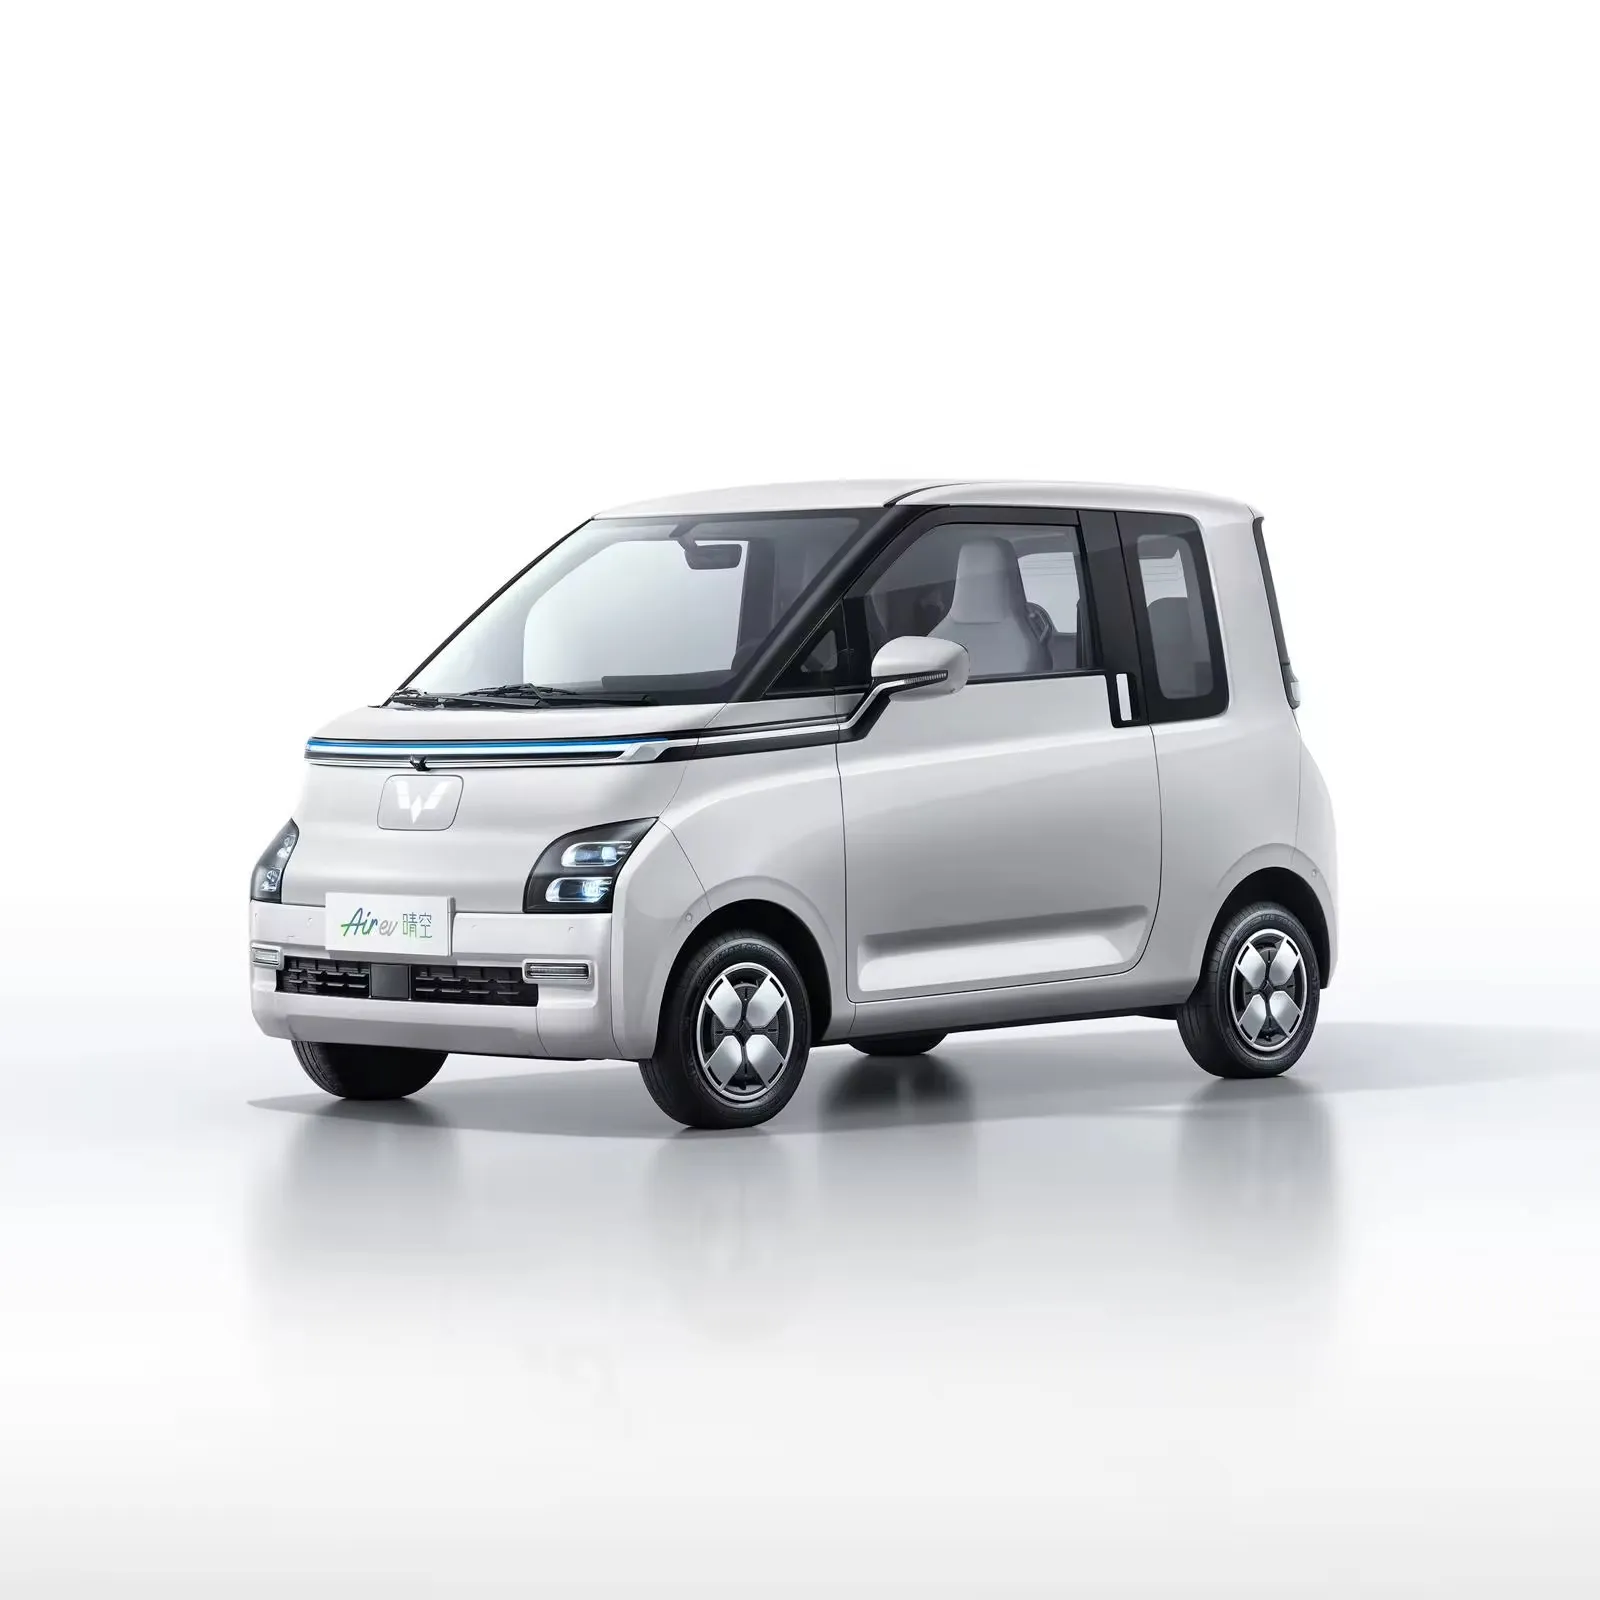 Coches usados baratos, vehículo eléctrico de nueva energía, de 2 asientos Hatchback coche pequeño, coche Wuling Hongguang Air Mini EV a la venta